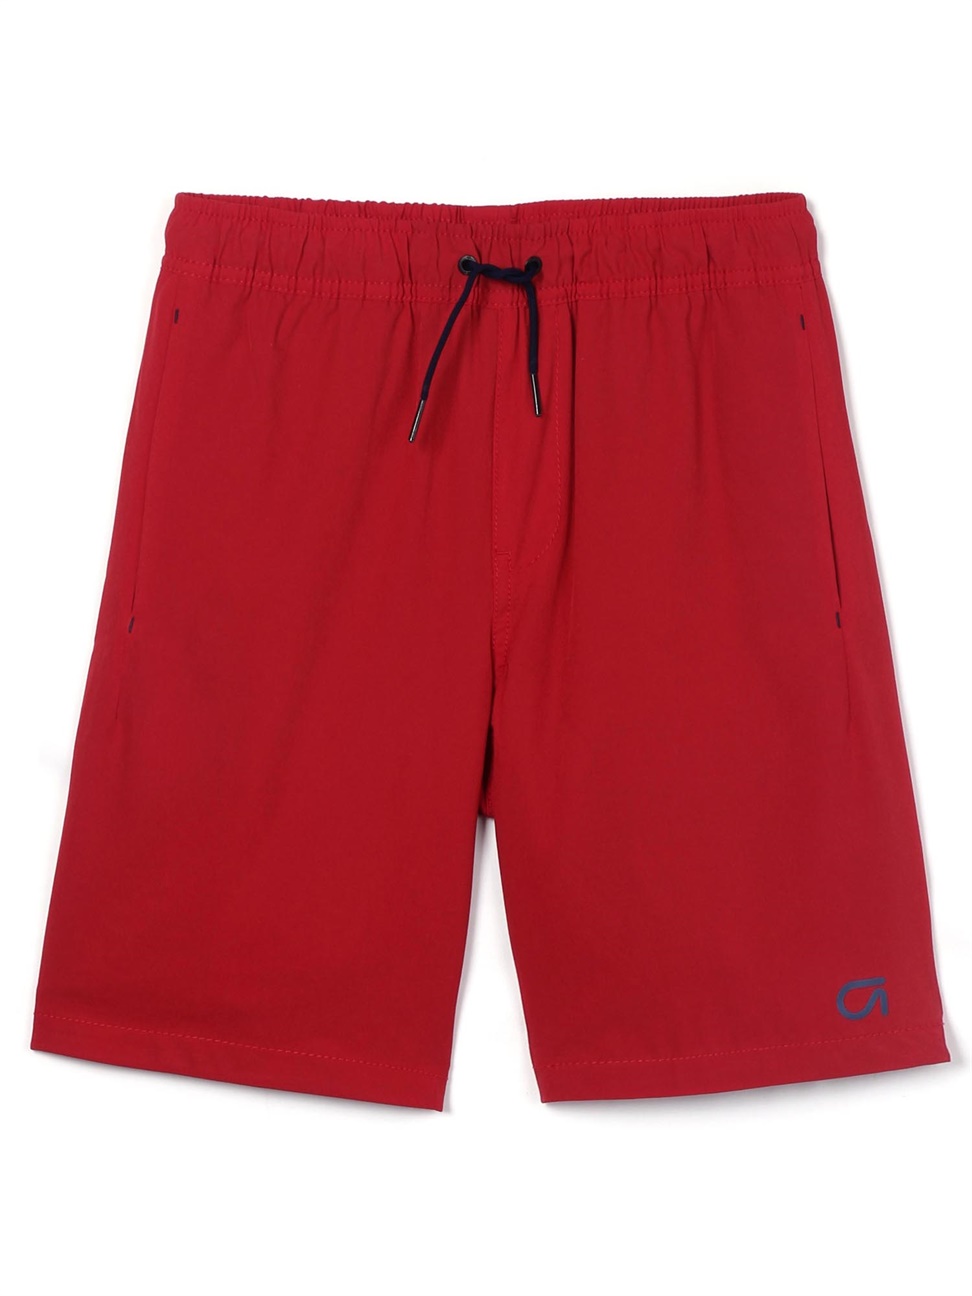 男童裝|鬆緊運動短褲 Gap Fit運動系列-摩登紅色